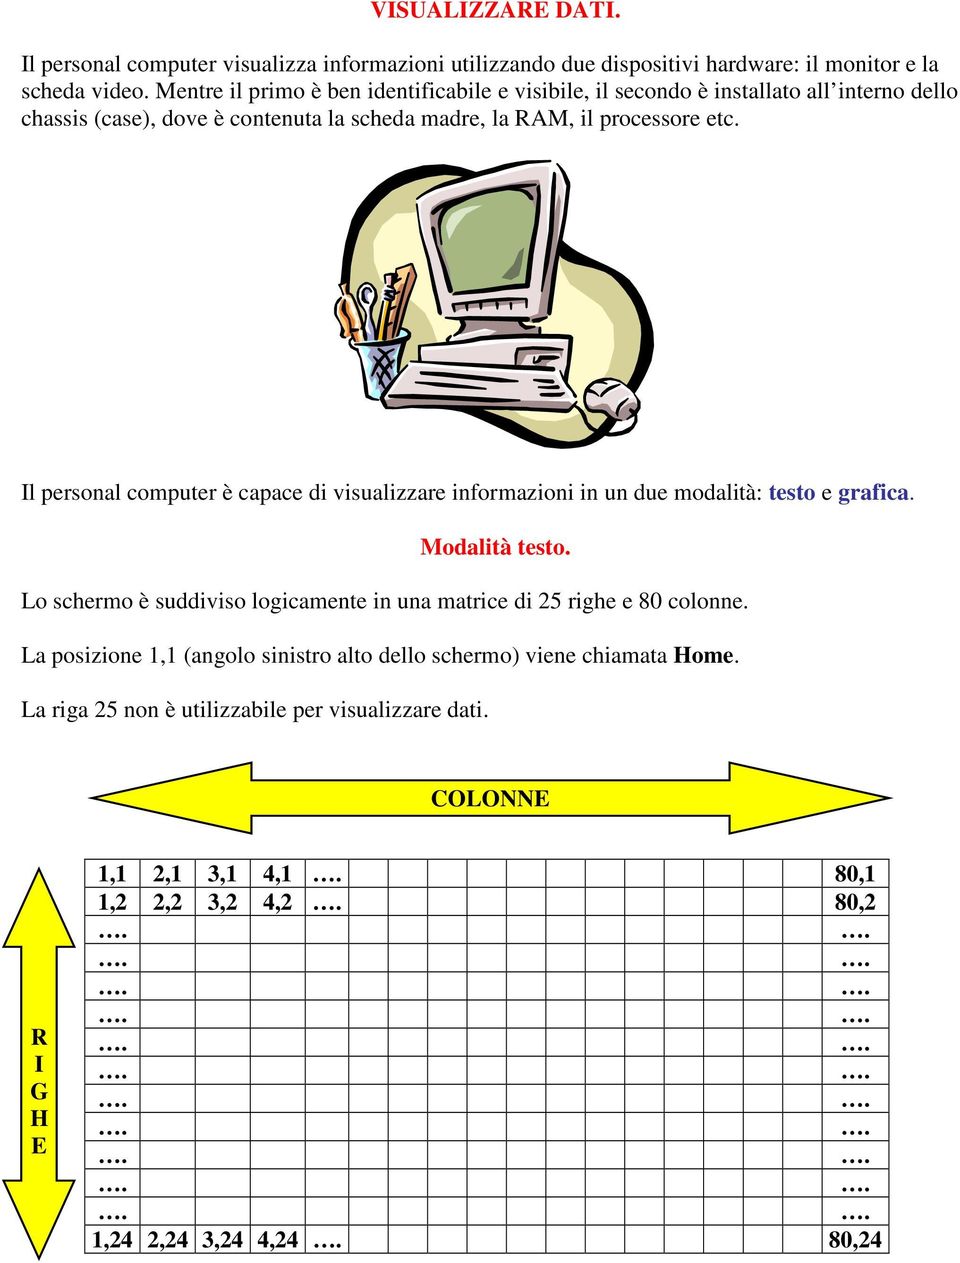 Il personal computer è capace di visualizzare informazioni in un due modalità: testo e grafica. Modalità testo.